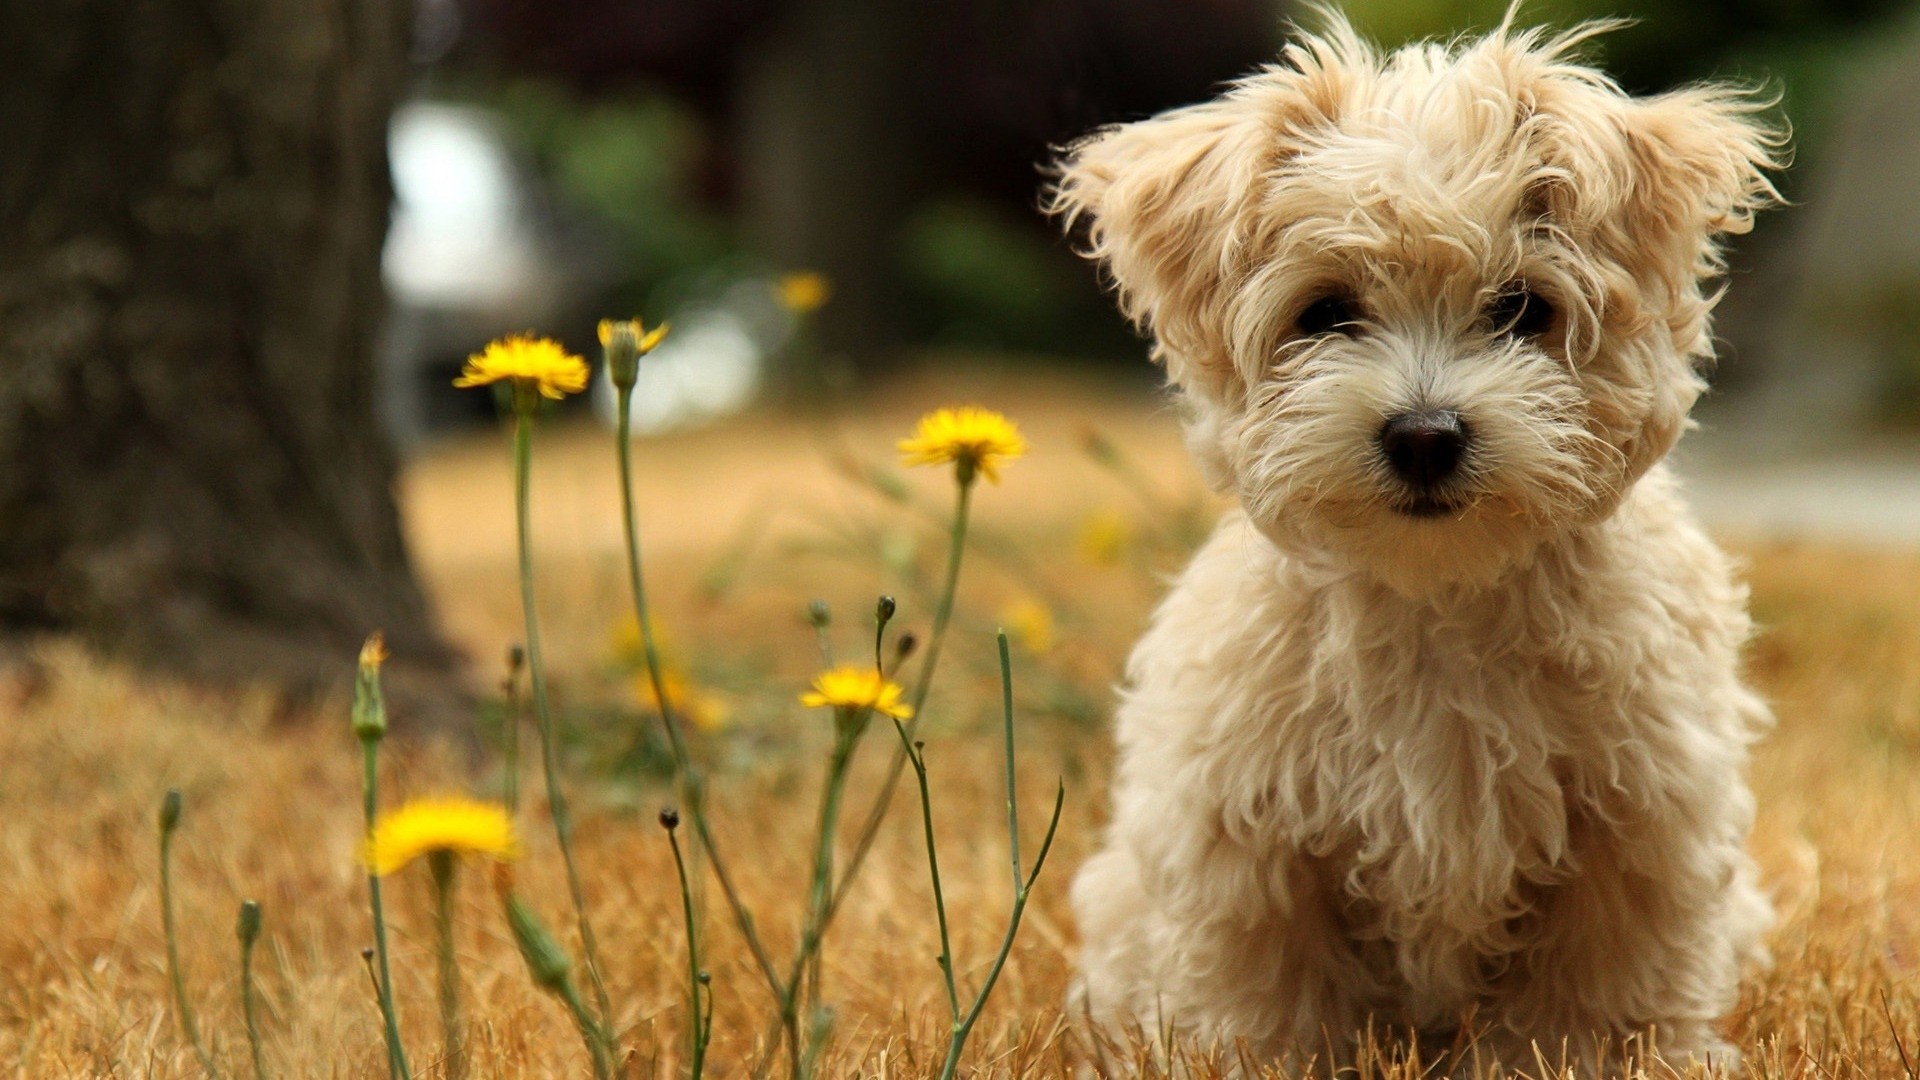 Cute Brown Fuzzy Puppy In Field Full 1080p Ultra HD Wallpaper